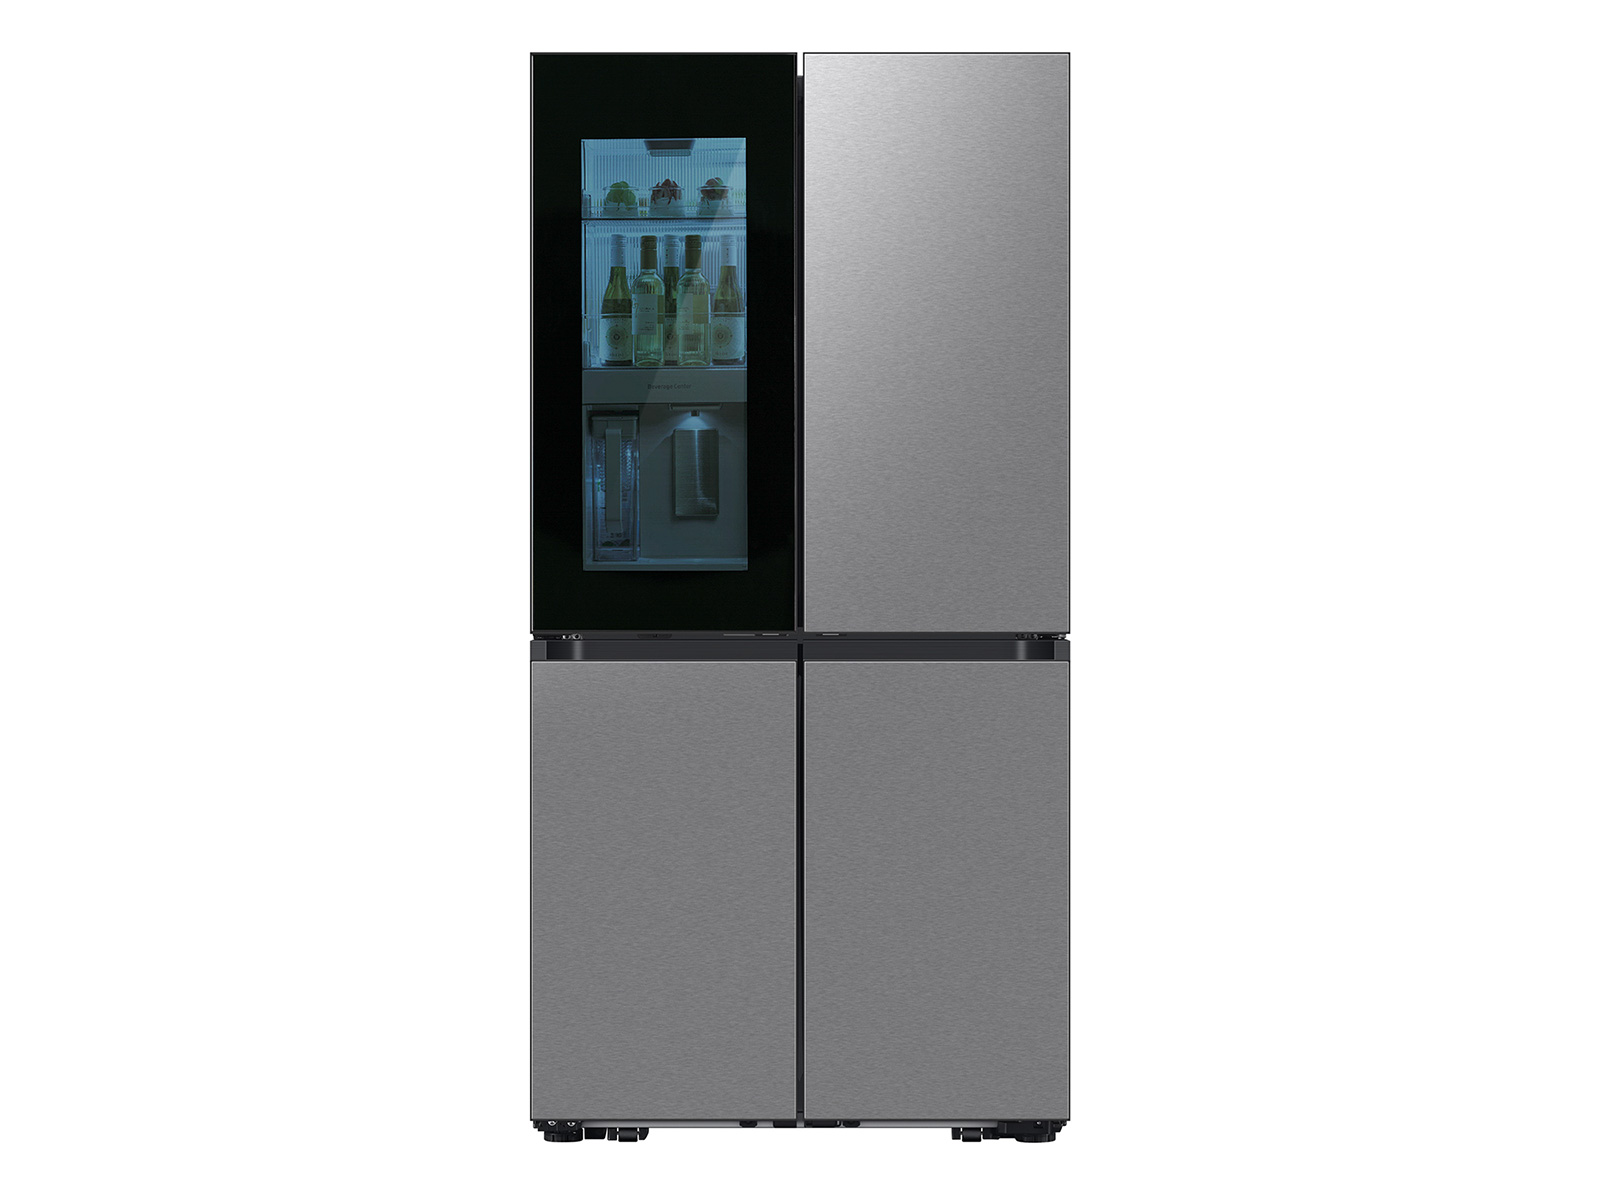 Thumbnail image of Bespoke Counter Depth 4-Door Flex™ Refrigerator (23 cu. ft.) with Beverage Zone™ and Auto Open Door in Stainless Steel